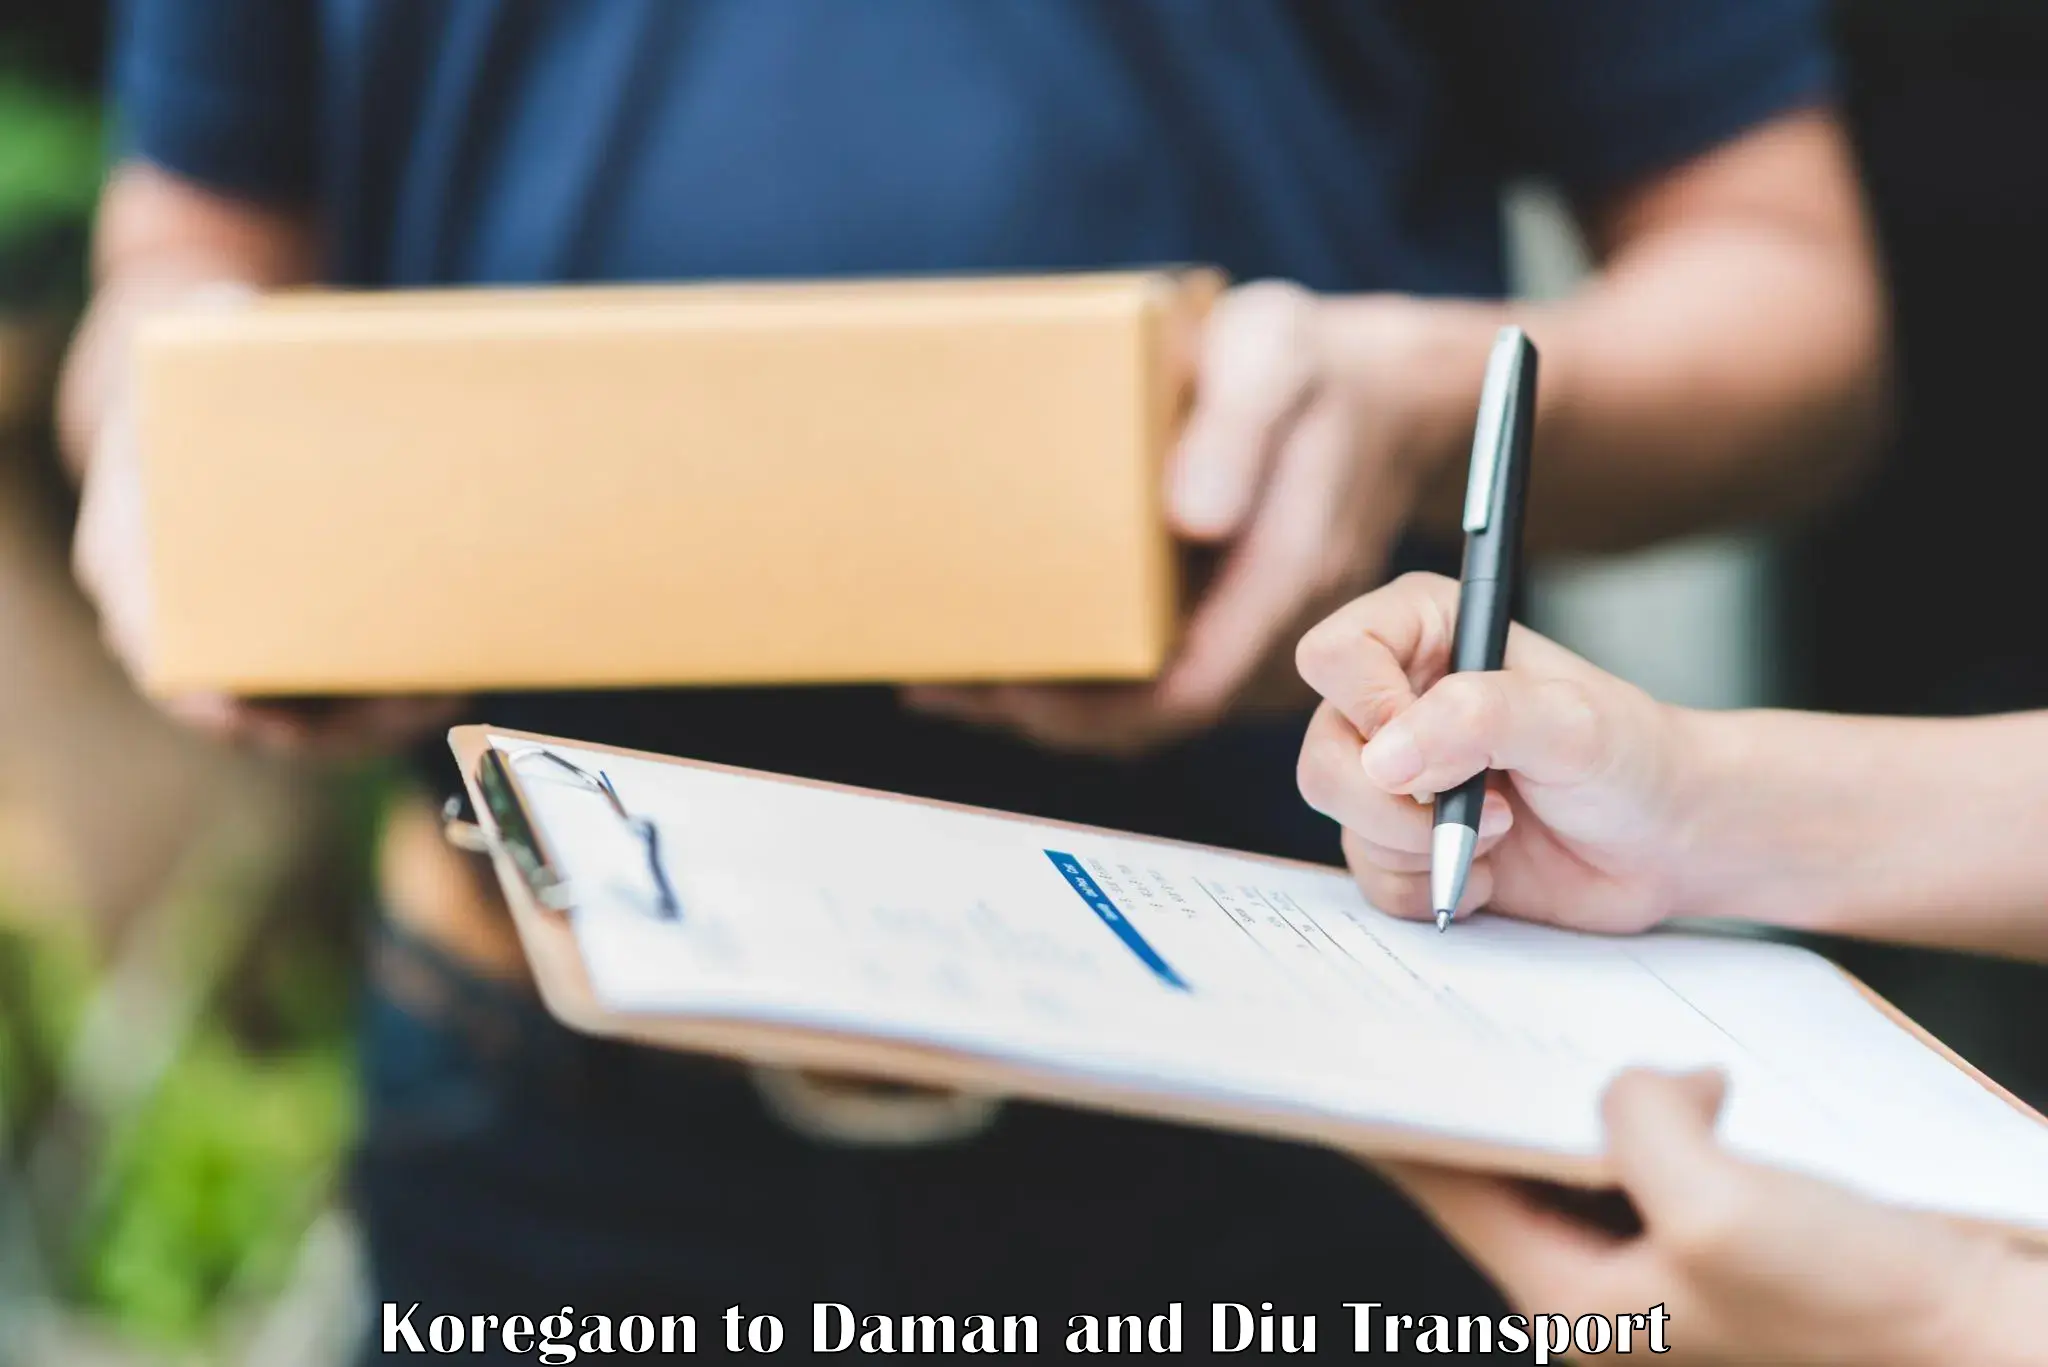 Container transport service Koregaon to Daman and Diu